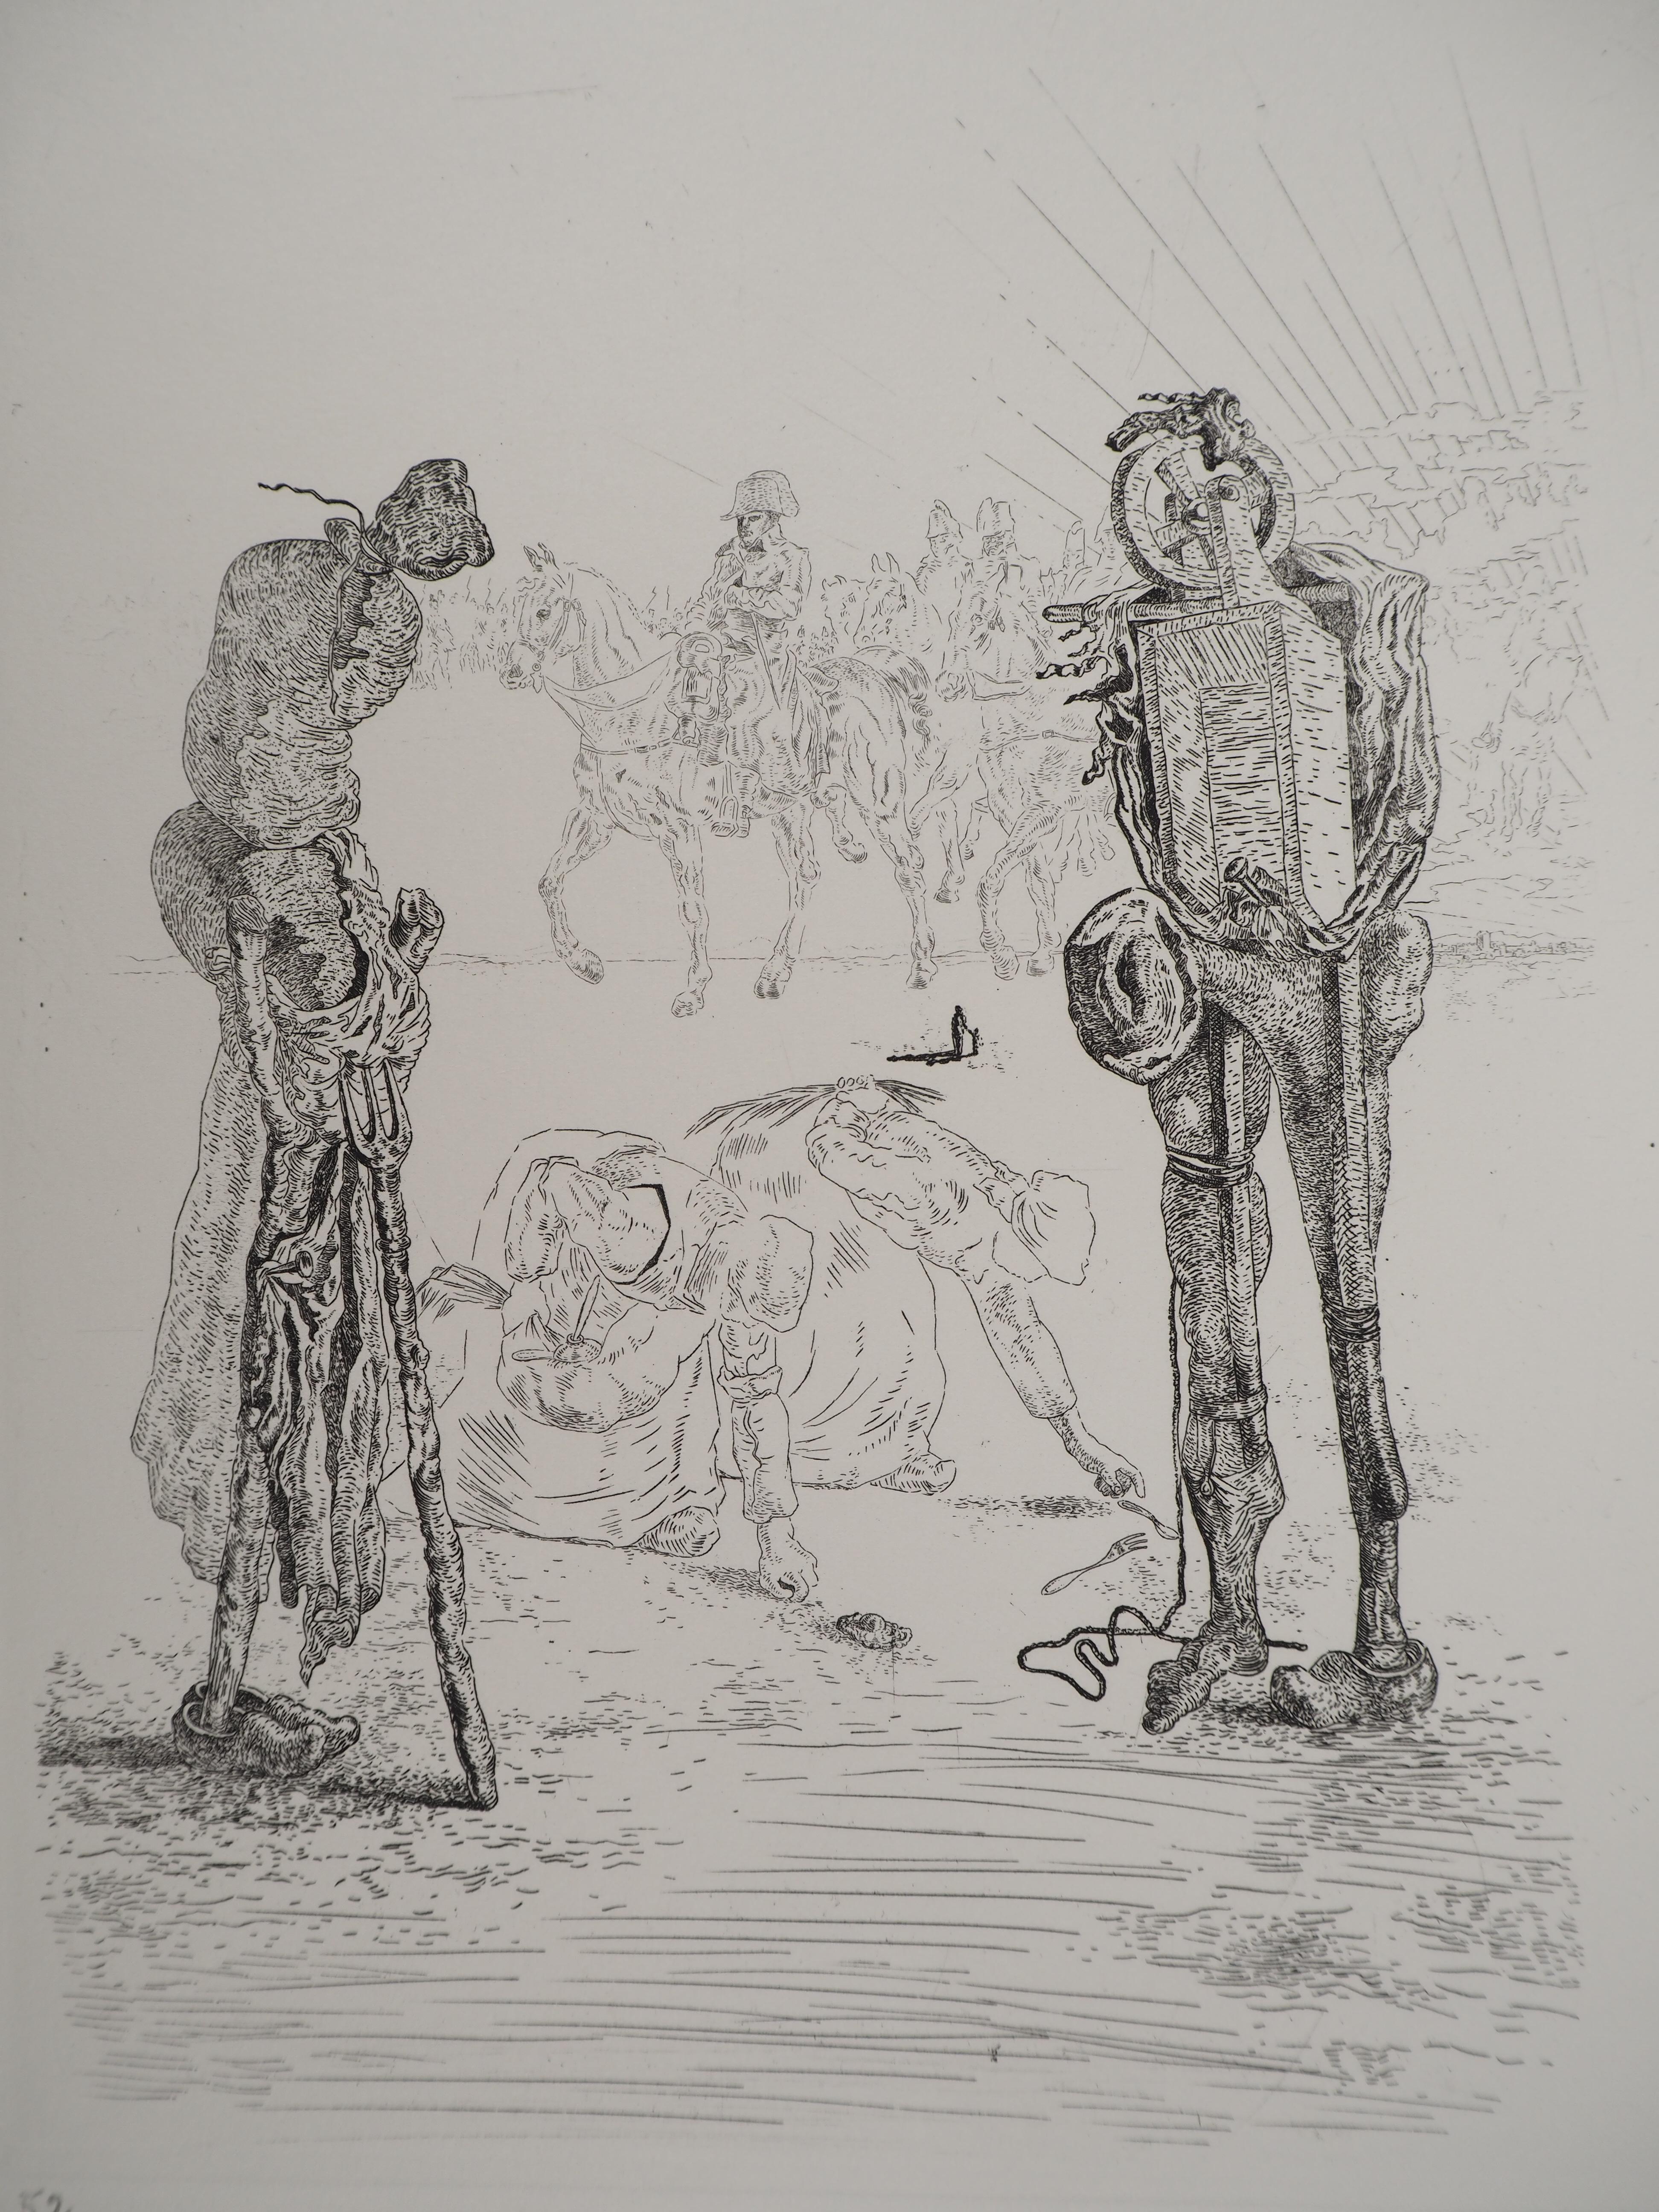 Salvador Dali
Passage des troupes napoléoniennes, 1975

Gravure originale 
Signé au crayon 
Limité à 100 exemplaires (Ici numéroté 52)
Sur vélin d'Arches  32.5 x 25 cm (c. 12.7 x 9.8 in)

REFERENCES :
- Catalogue raisonne Field #34-2
- Catalogue